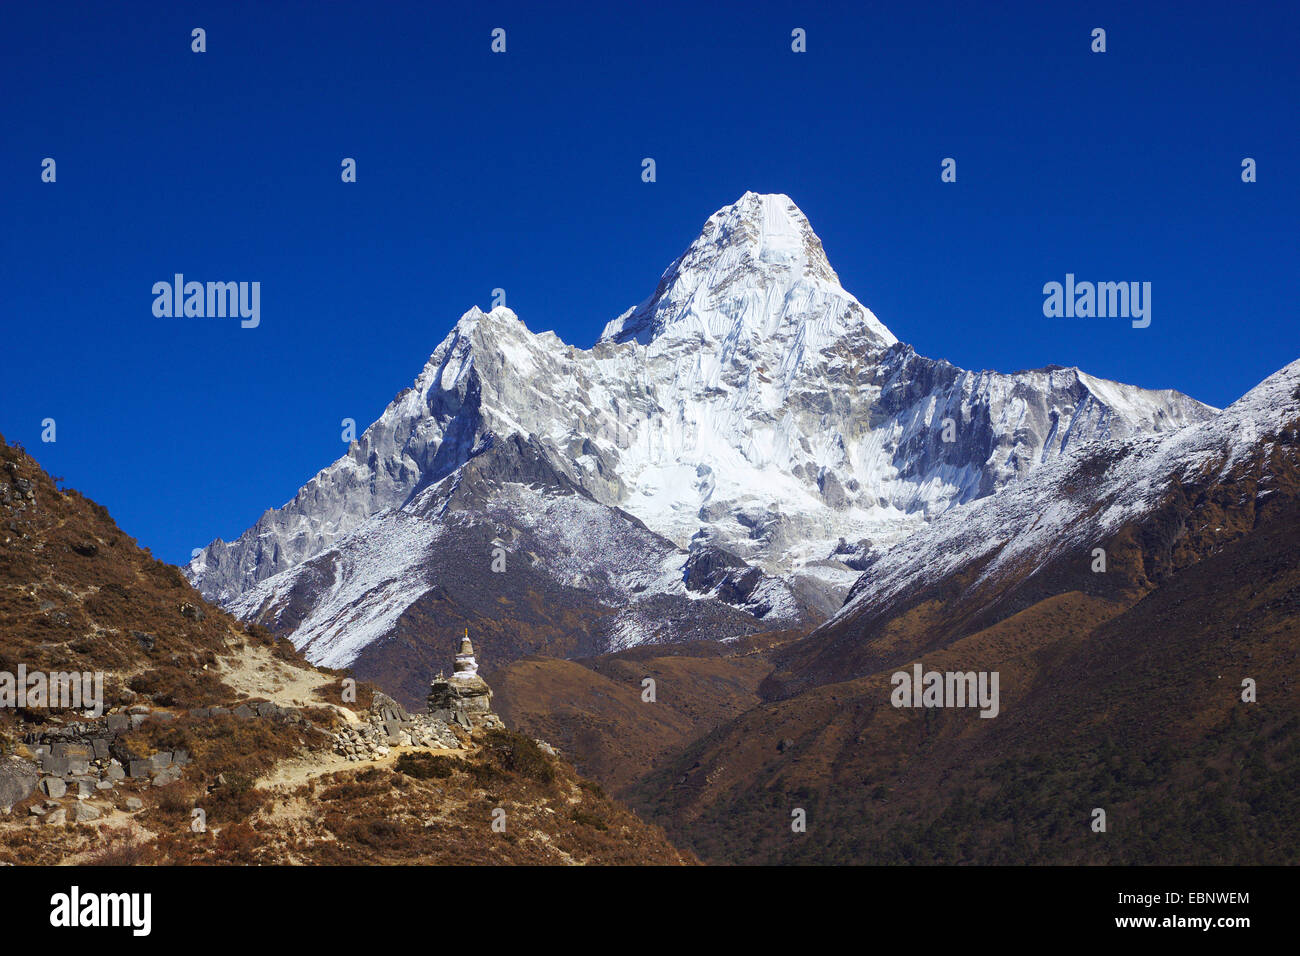 Vue de l'Ama Dablam, chorten en premier plan près de Pangbouche, Népal, Himalaya, Khumbu Himal Banque D'Images